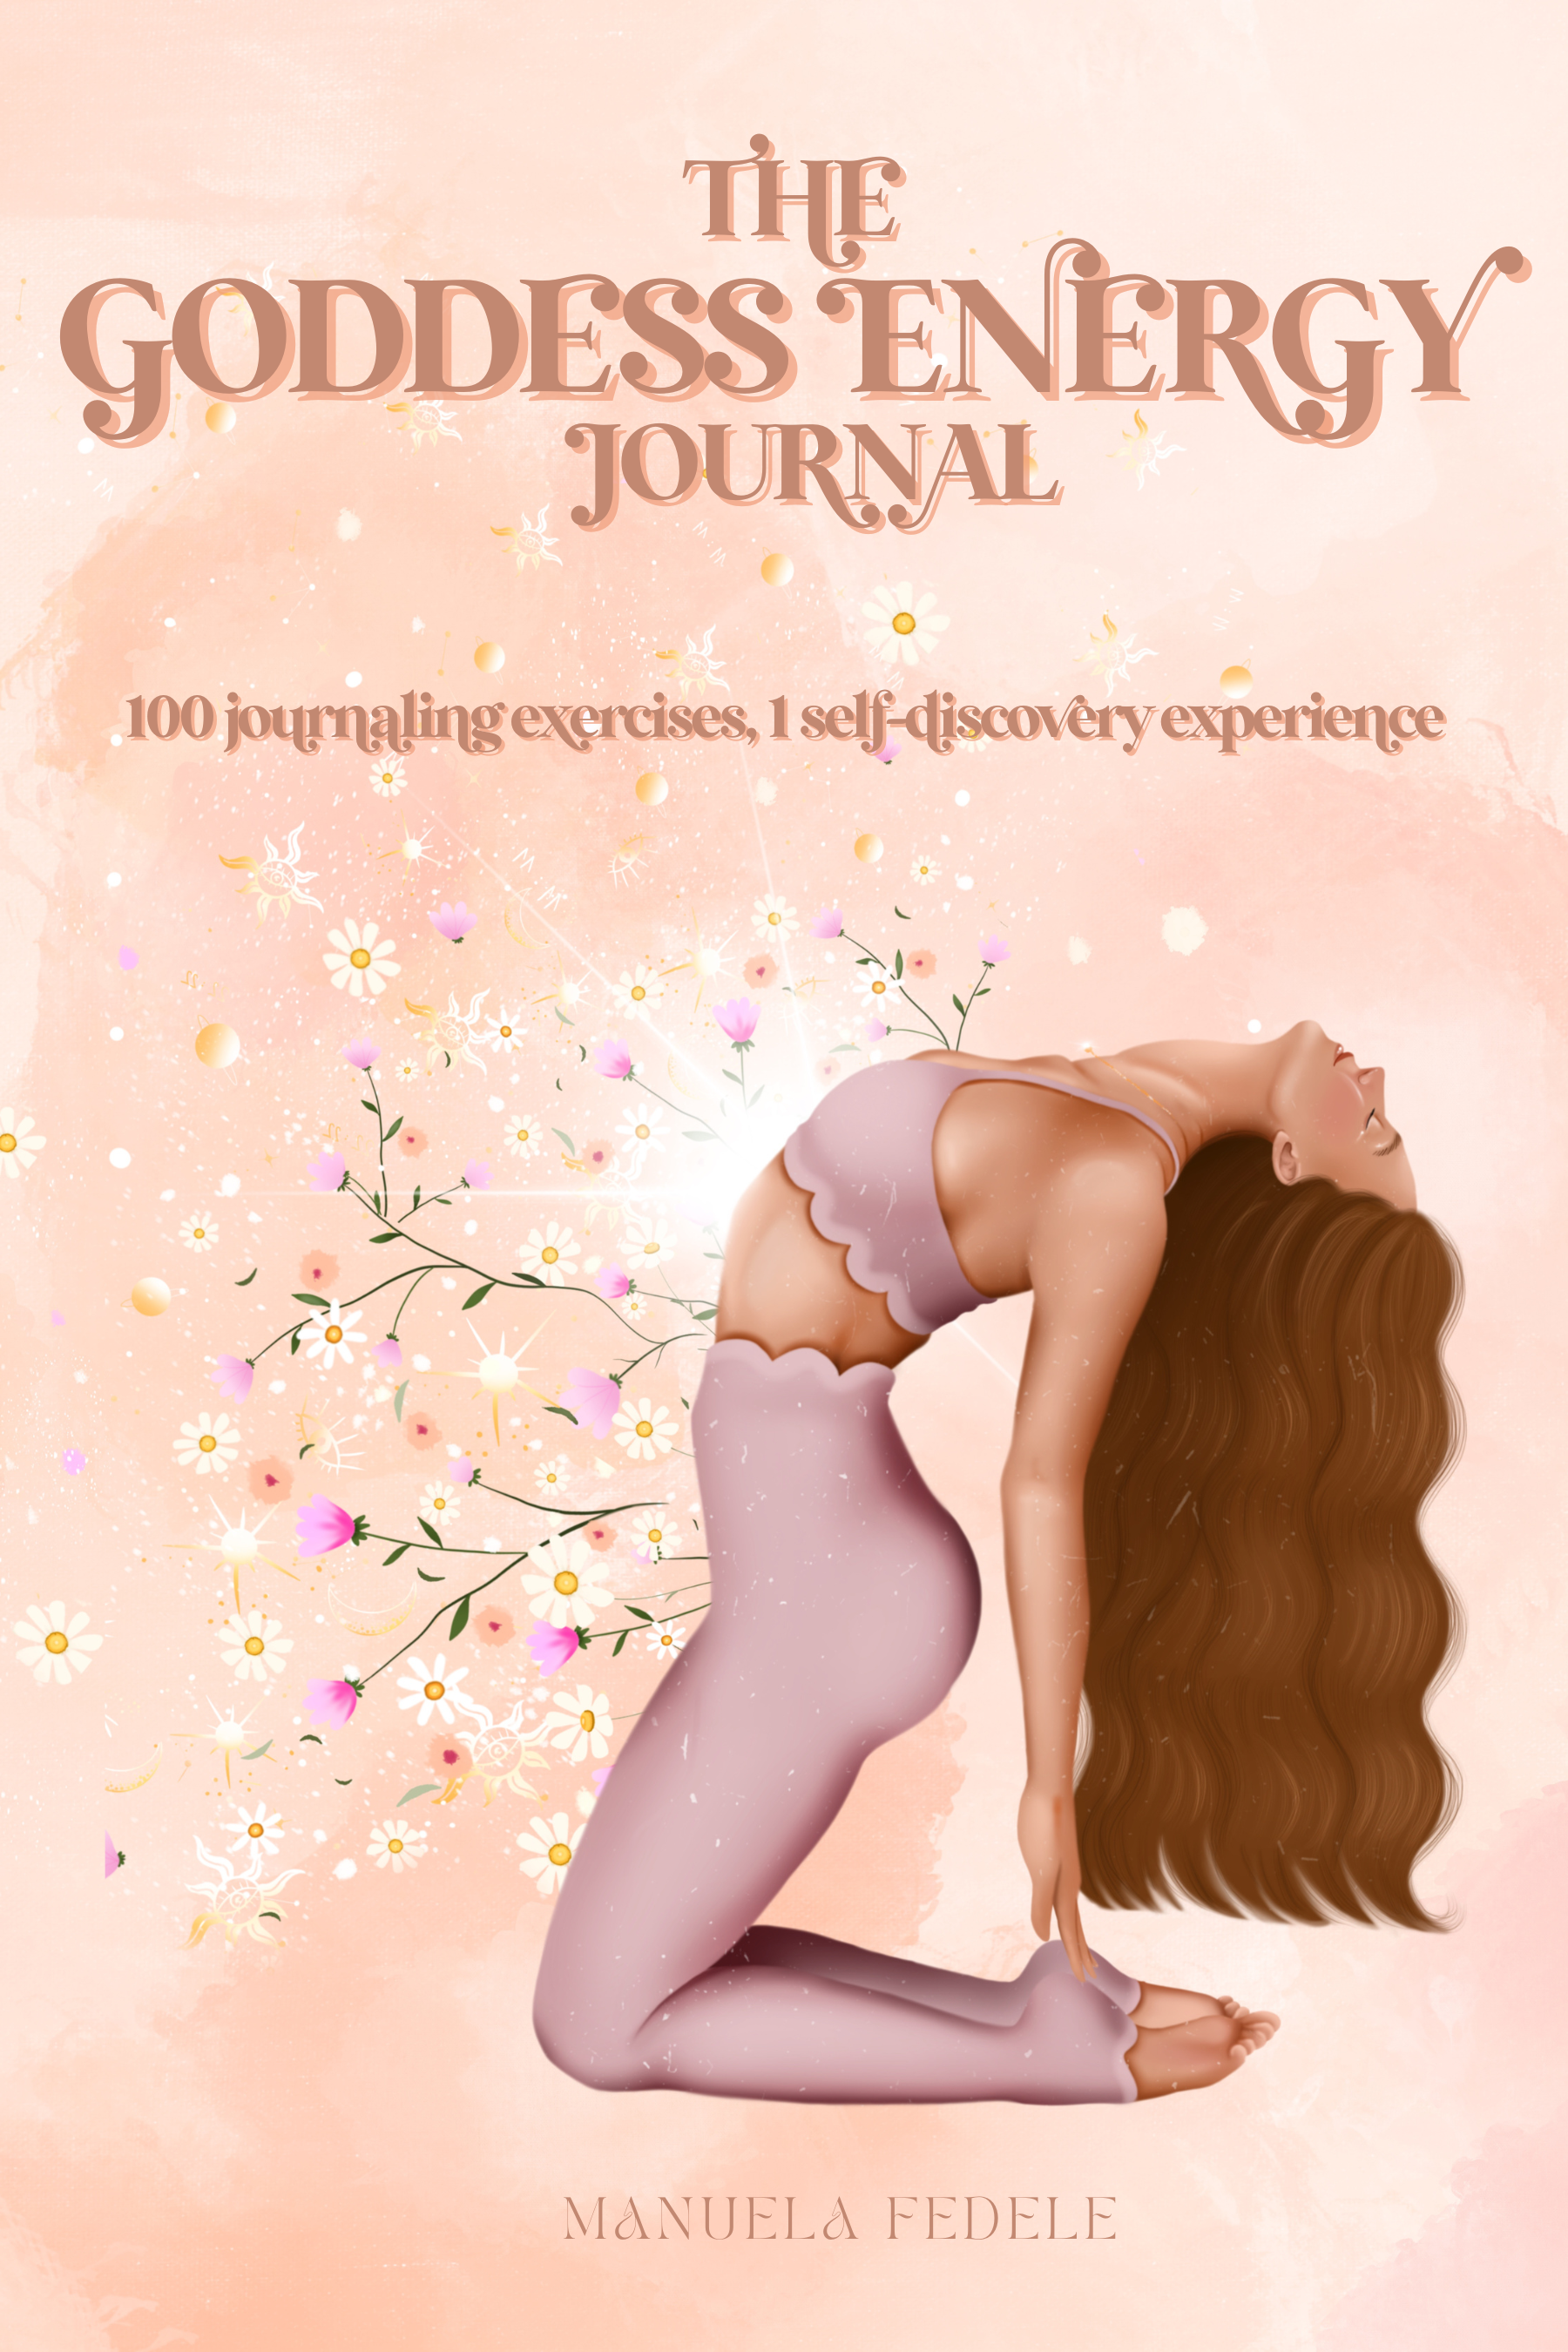 The Goddess Energy Journal on Kindle